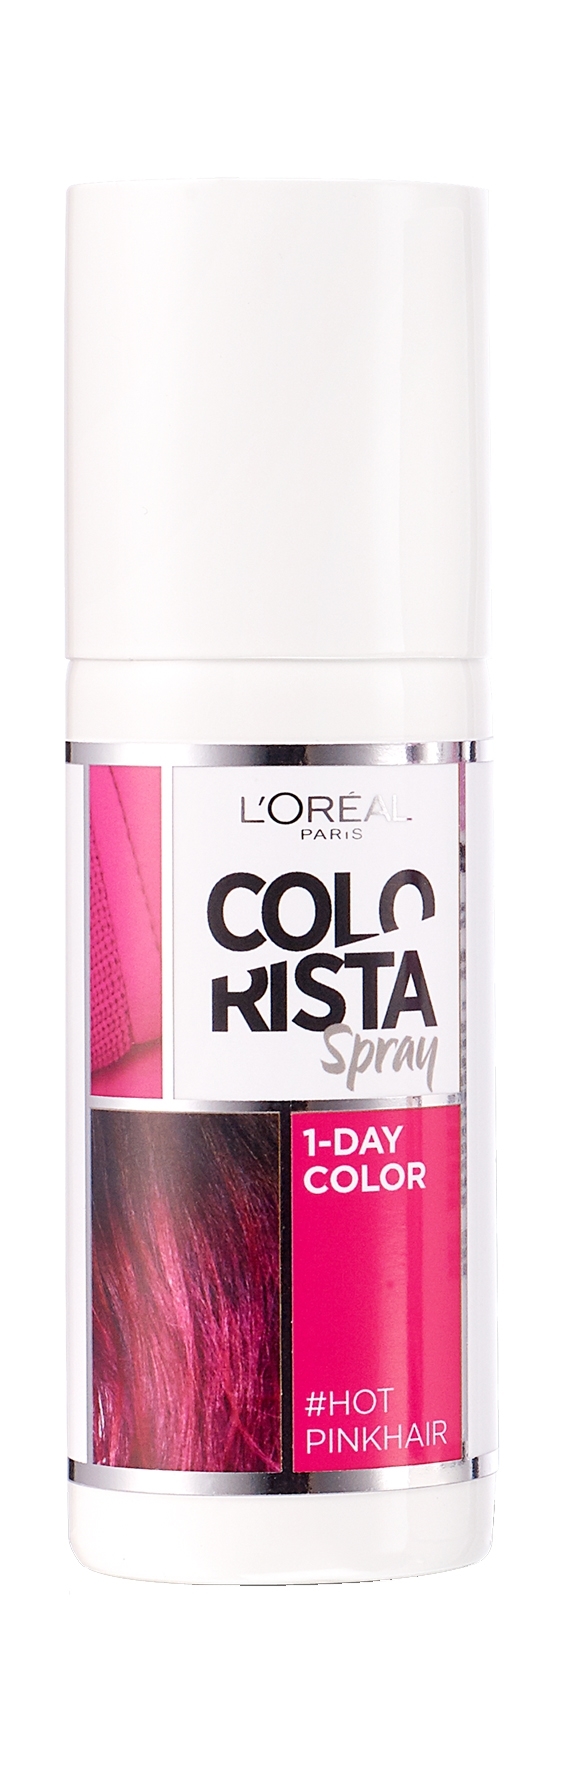 קולוריסטה לוריאל  ספריי צבע לשיער L’Oreal Colorista Spray